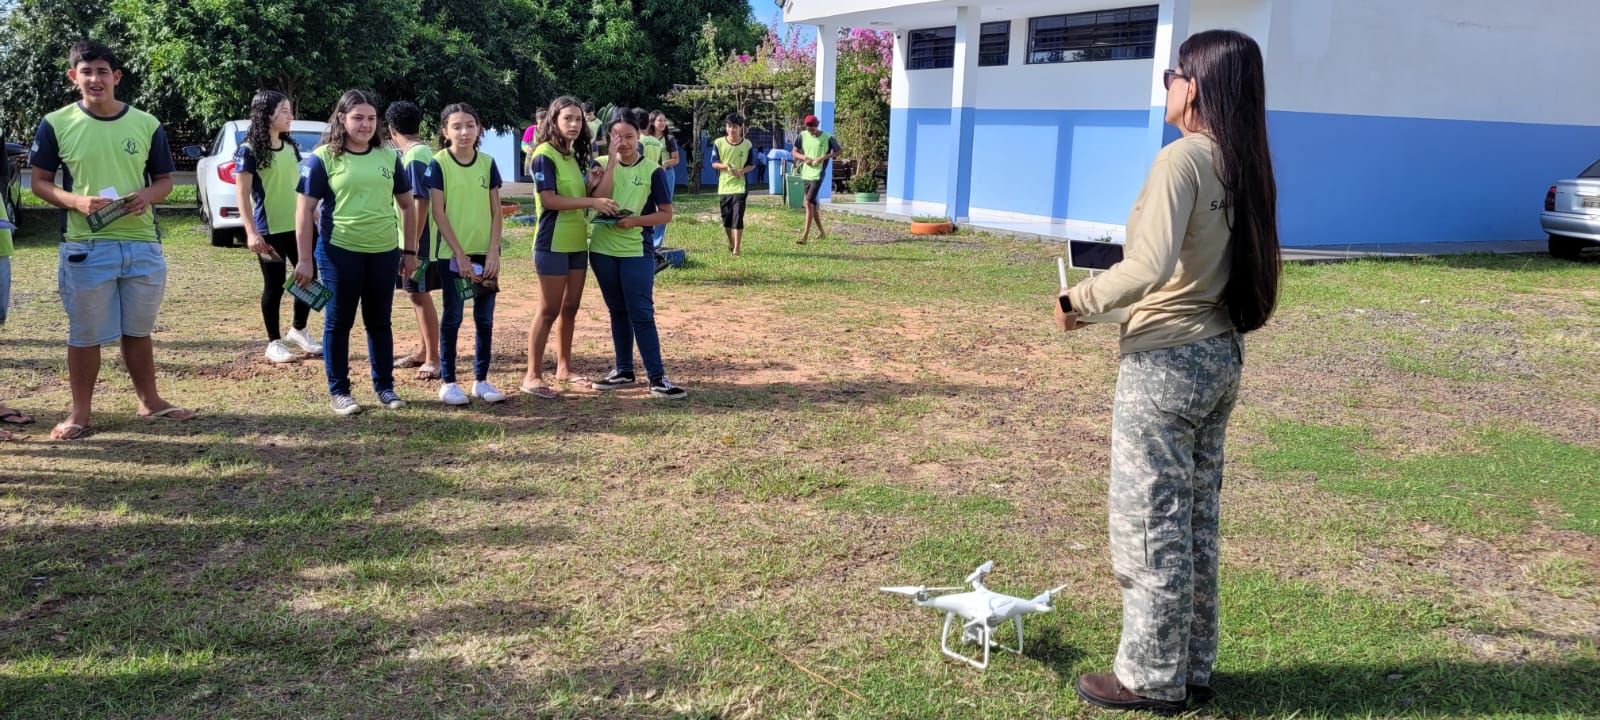 exibição de vistoria com drone